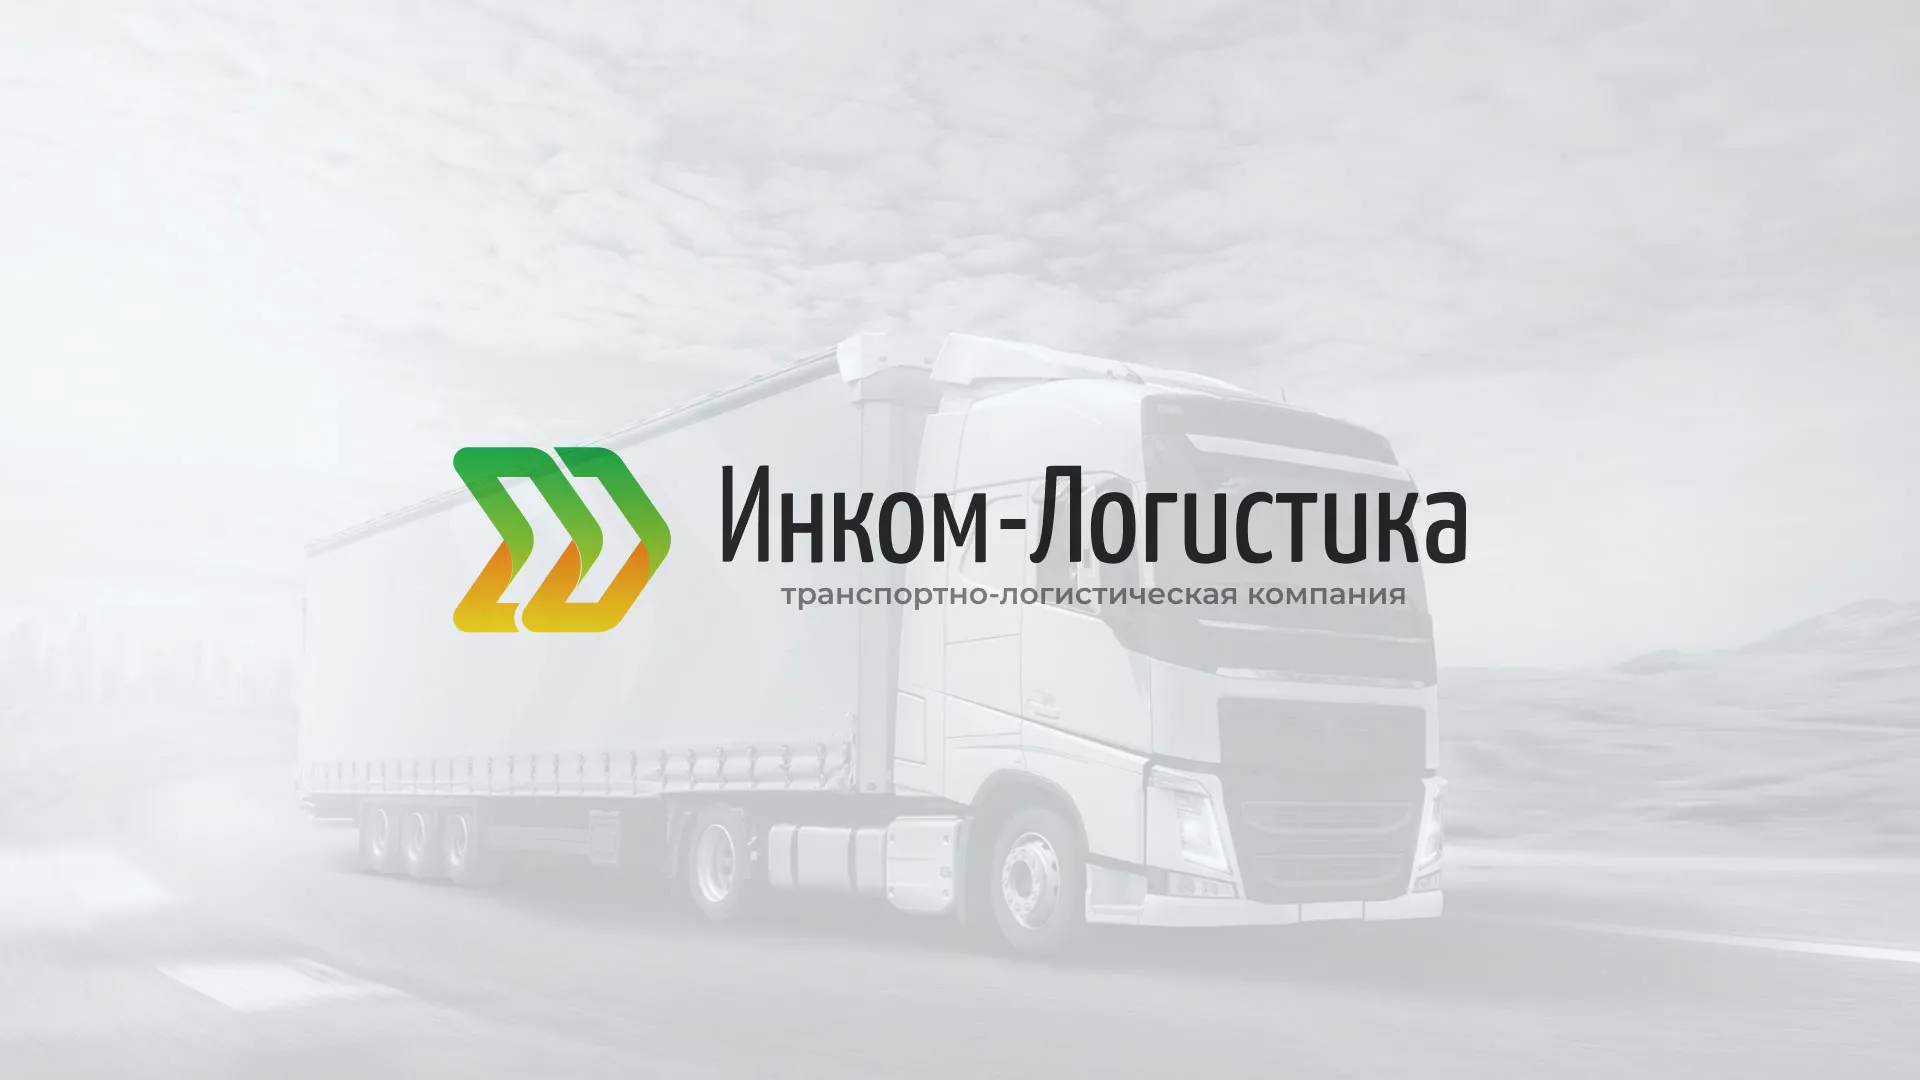 Разработка логотипа и сайта компании «Инком-Логистика» в Ставрополе